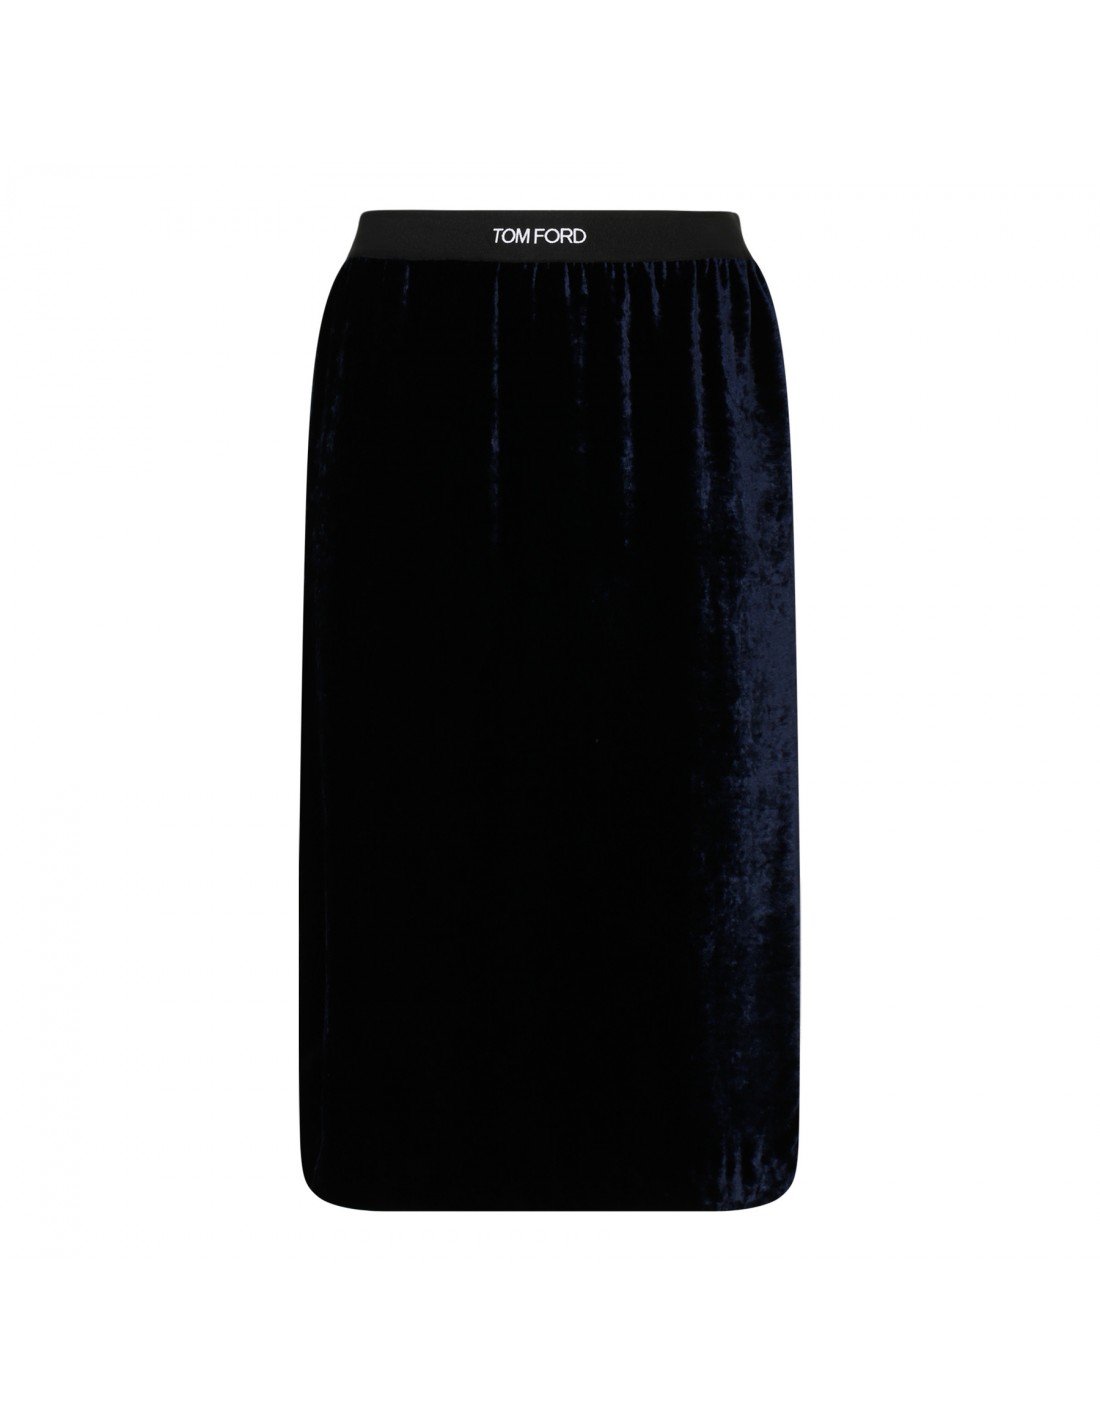 Inkwell lightweight velvet skirt